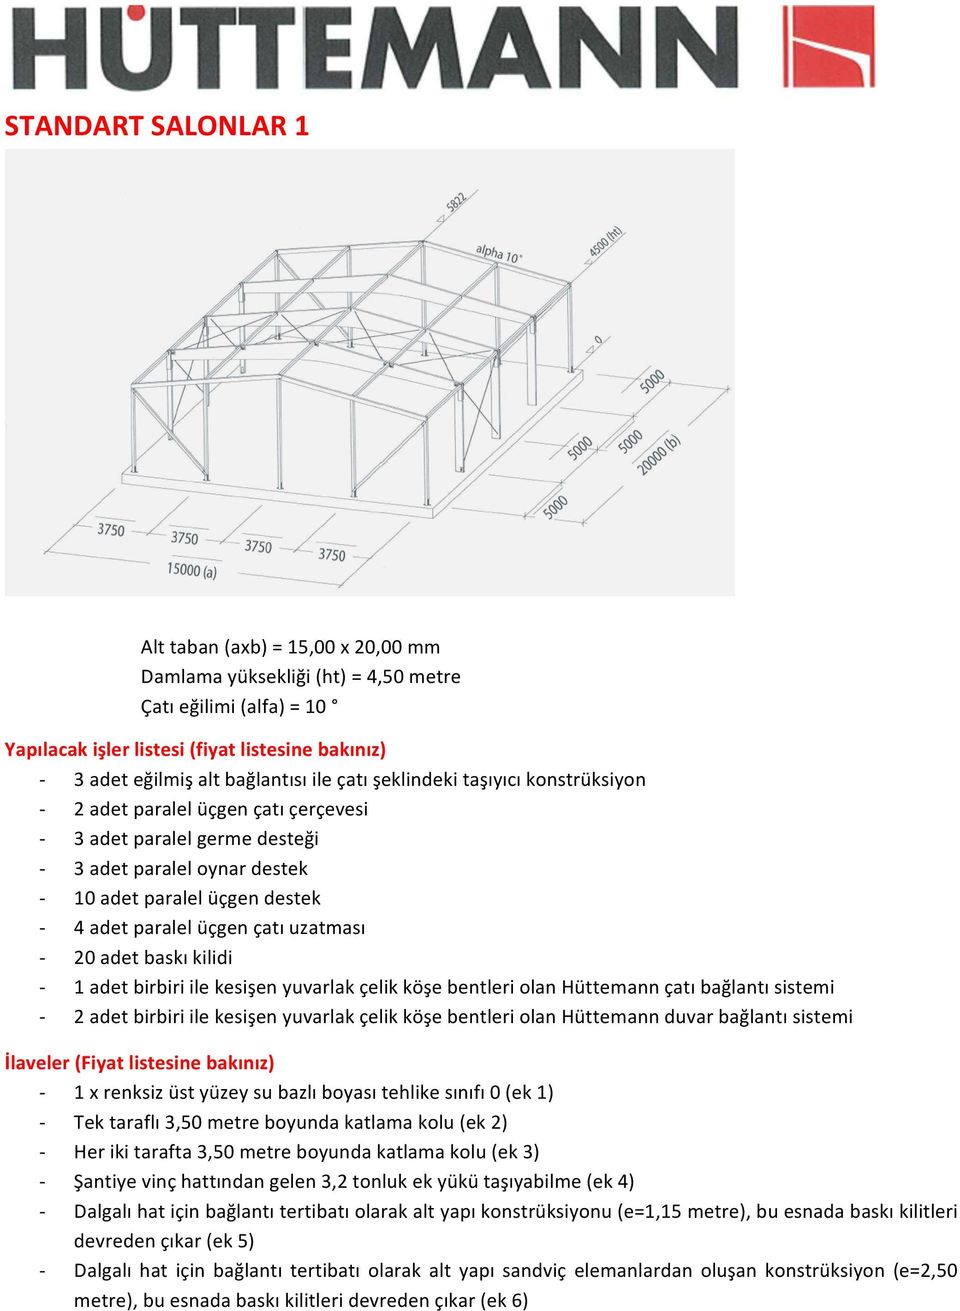 çatı uzatması - 20 adet baskı kilidi - 1 adet birbiri ile kesişen yuvarlak çelik köşe bentleri olan Hüttemann çatı bağlantı sistemi - 2 adet birbiri ile kesişen yuvarlak çelik köşe bentleri olan